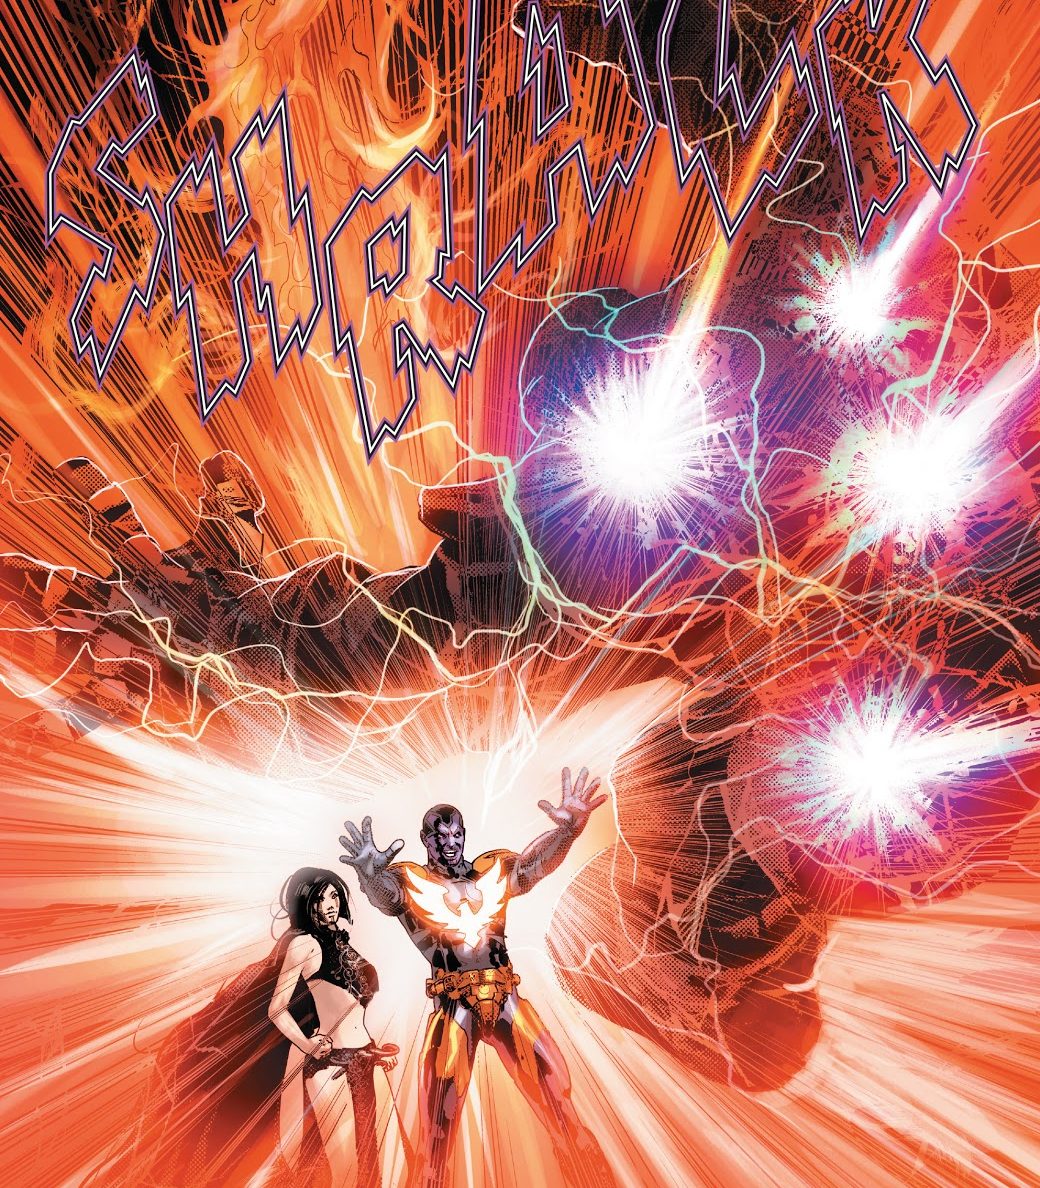 Thane vs Thanos